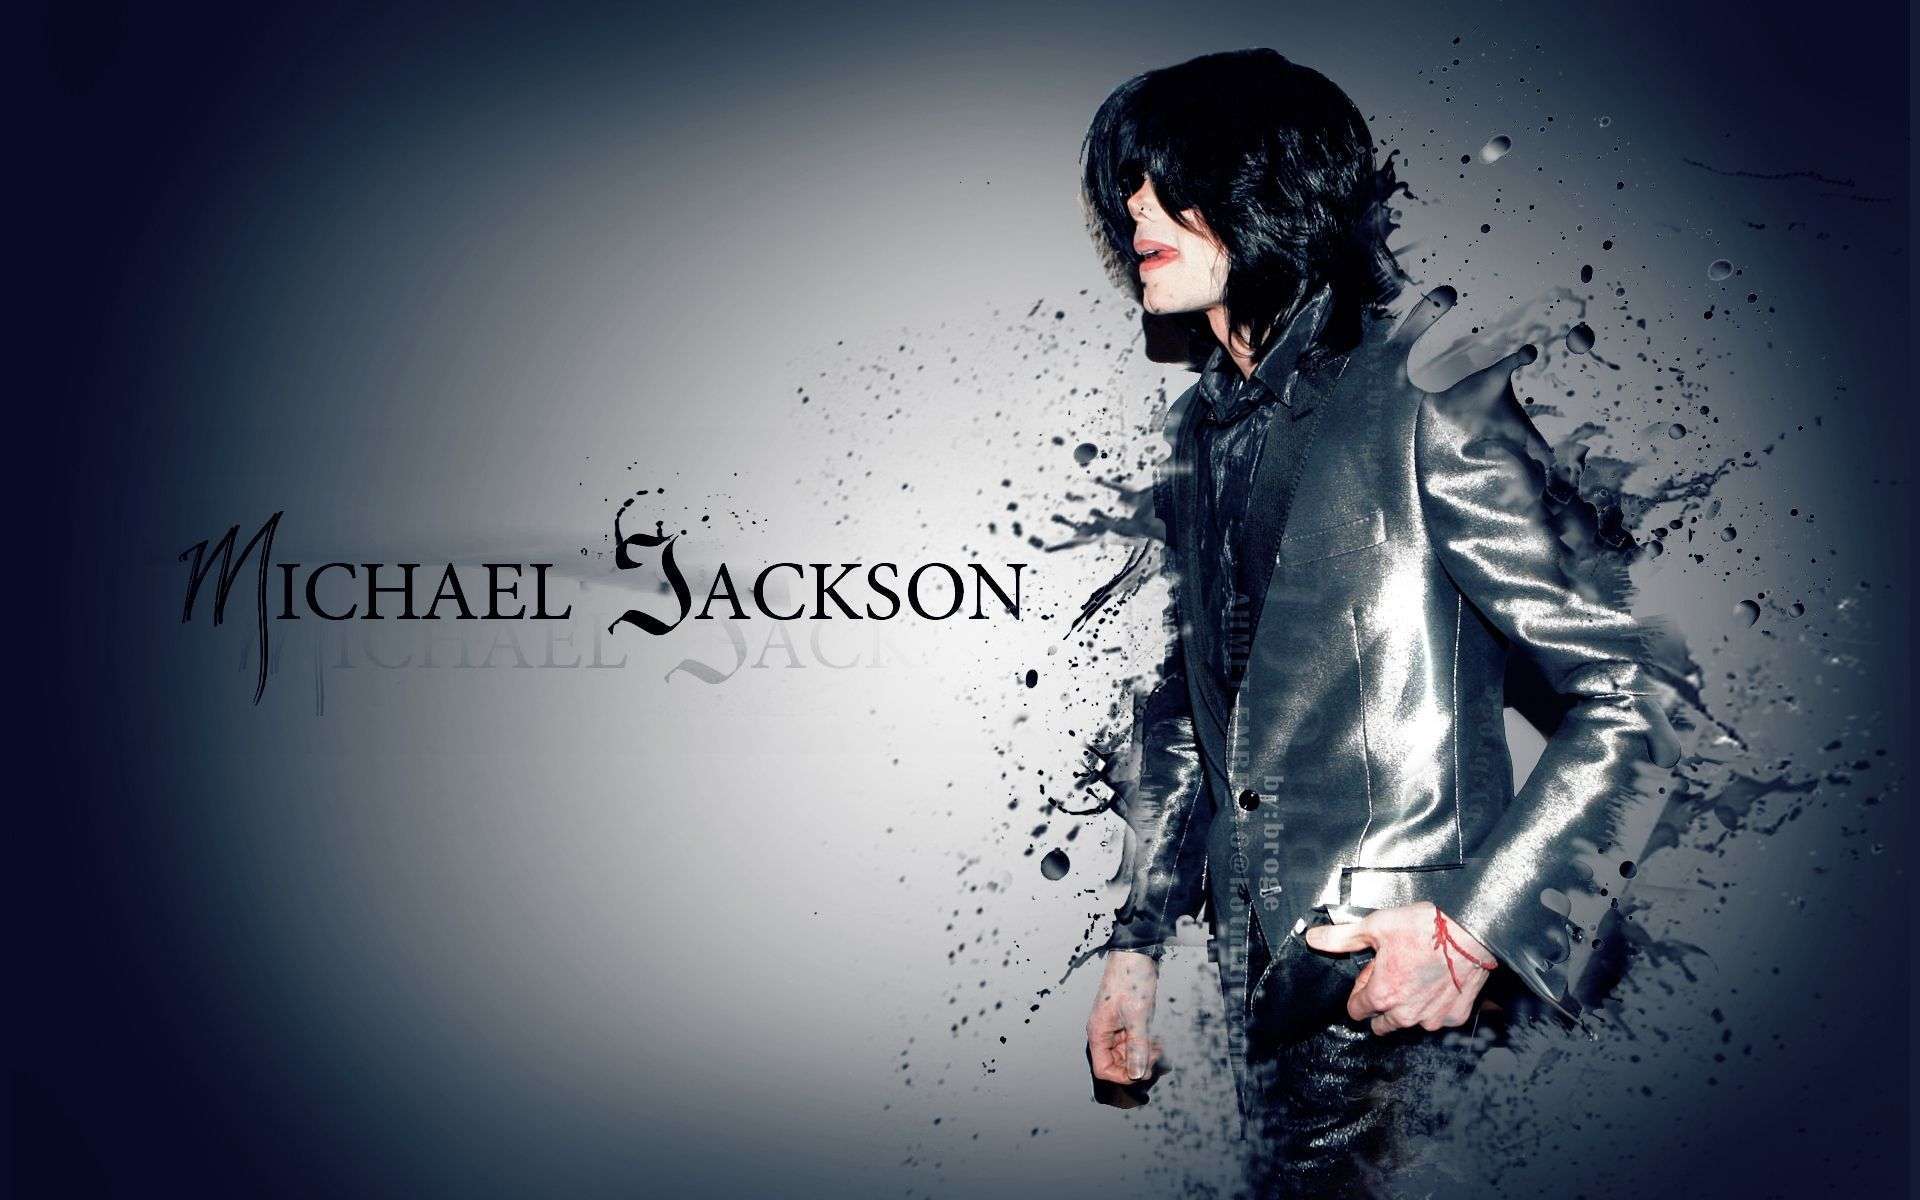 Yakın bir zamanda hayatını şaibeli bir şekilde kaybeden Michael Jackson, ‘Pop’un Kralı’ olarak da biliniyordu.